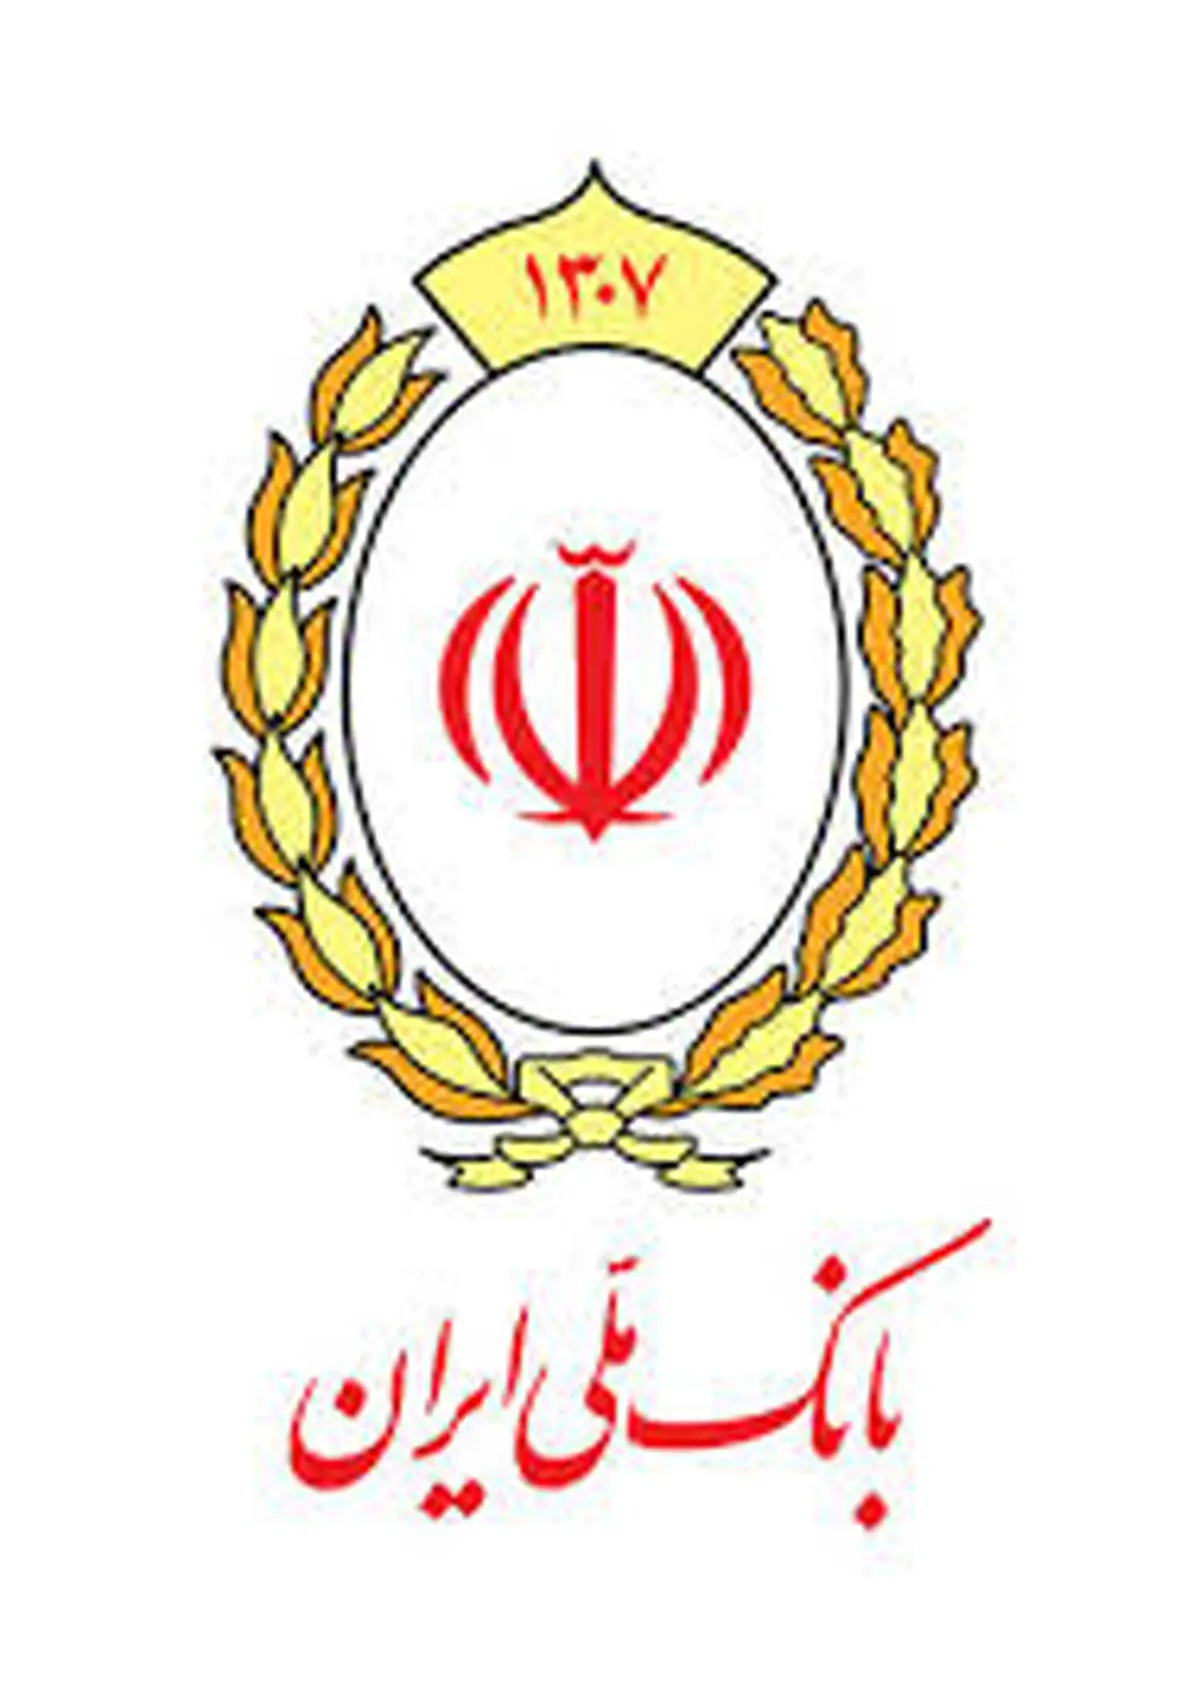 40 روز تا پایان مهلت شرکت در قرعه کشی حساب های قرض الحسنه پس انداز بانک ملی ایران

